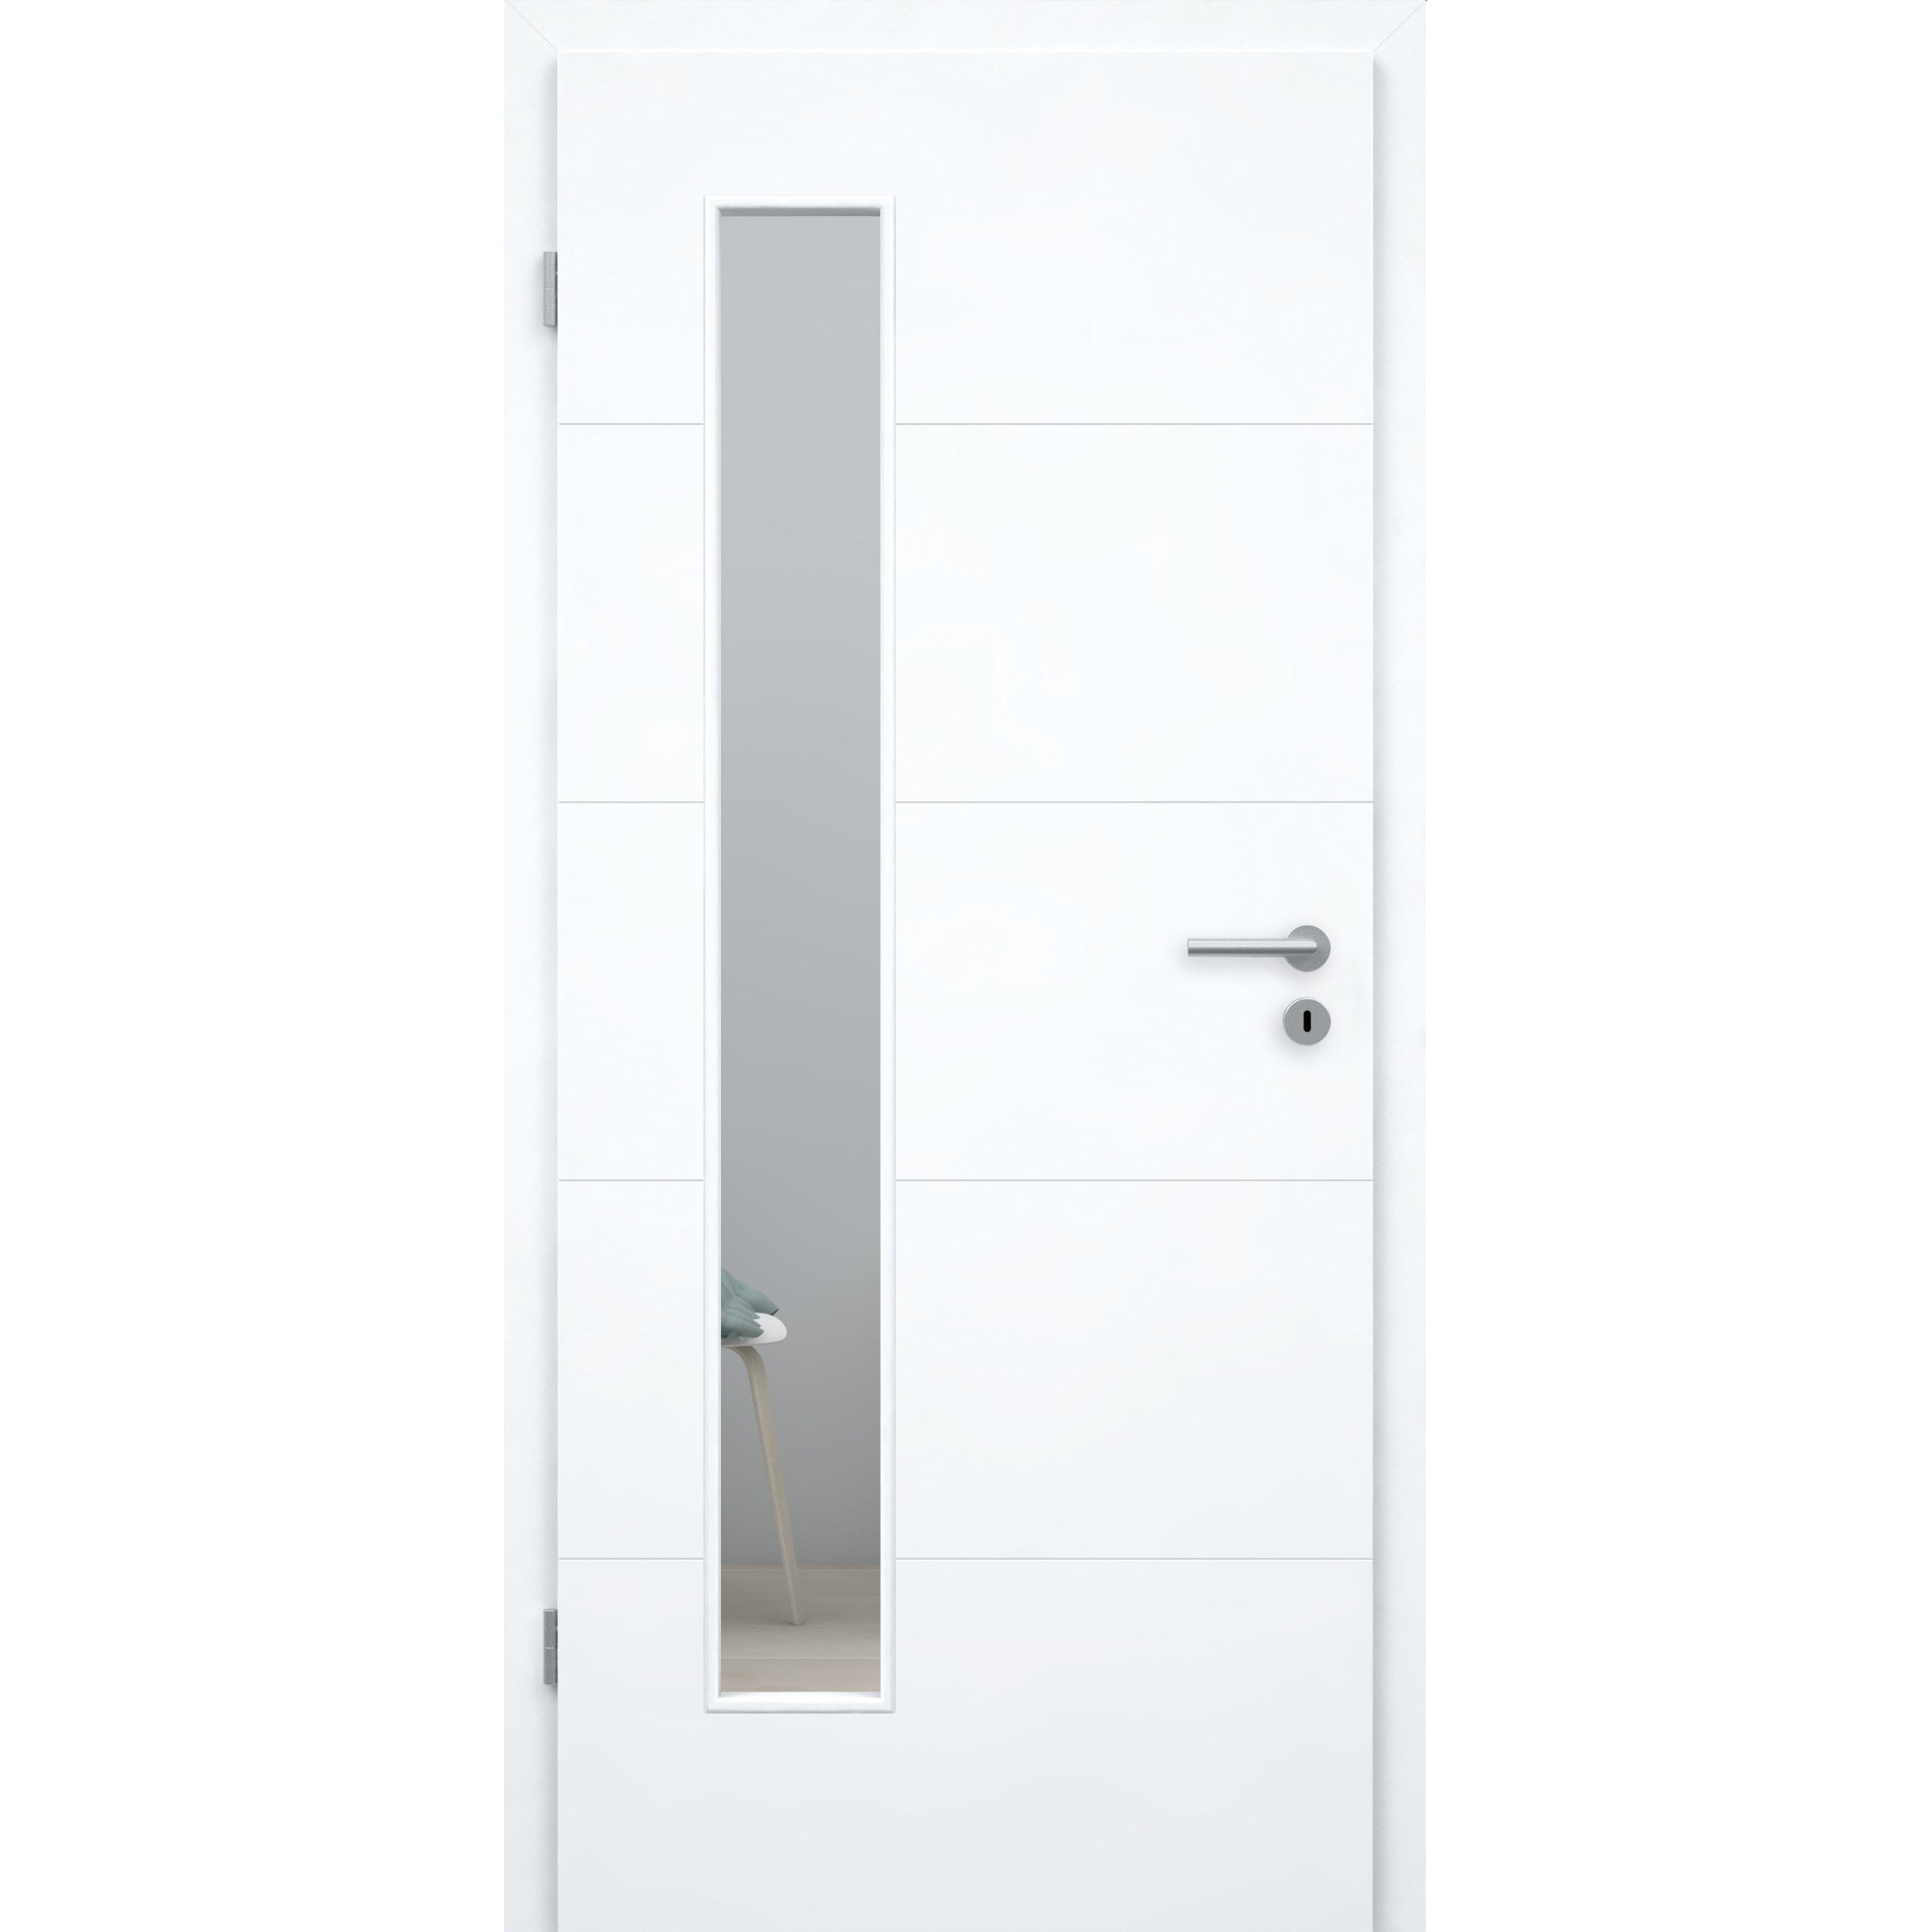 Zimmertür mit Zarge und Lichtausschnitt brillant-weiß 4 Rillen Designkante - Modell Designtür Q43LAB